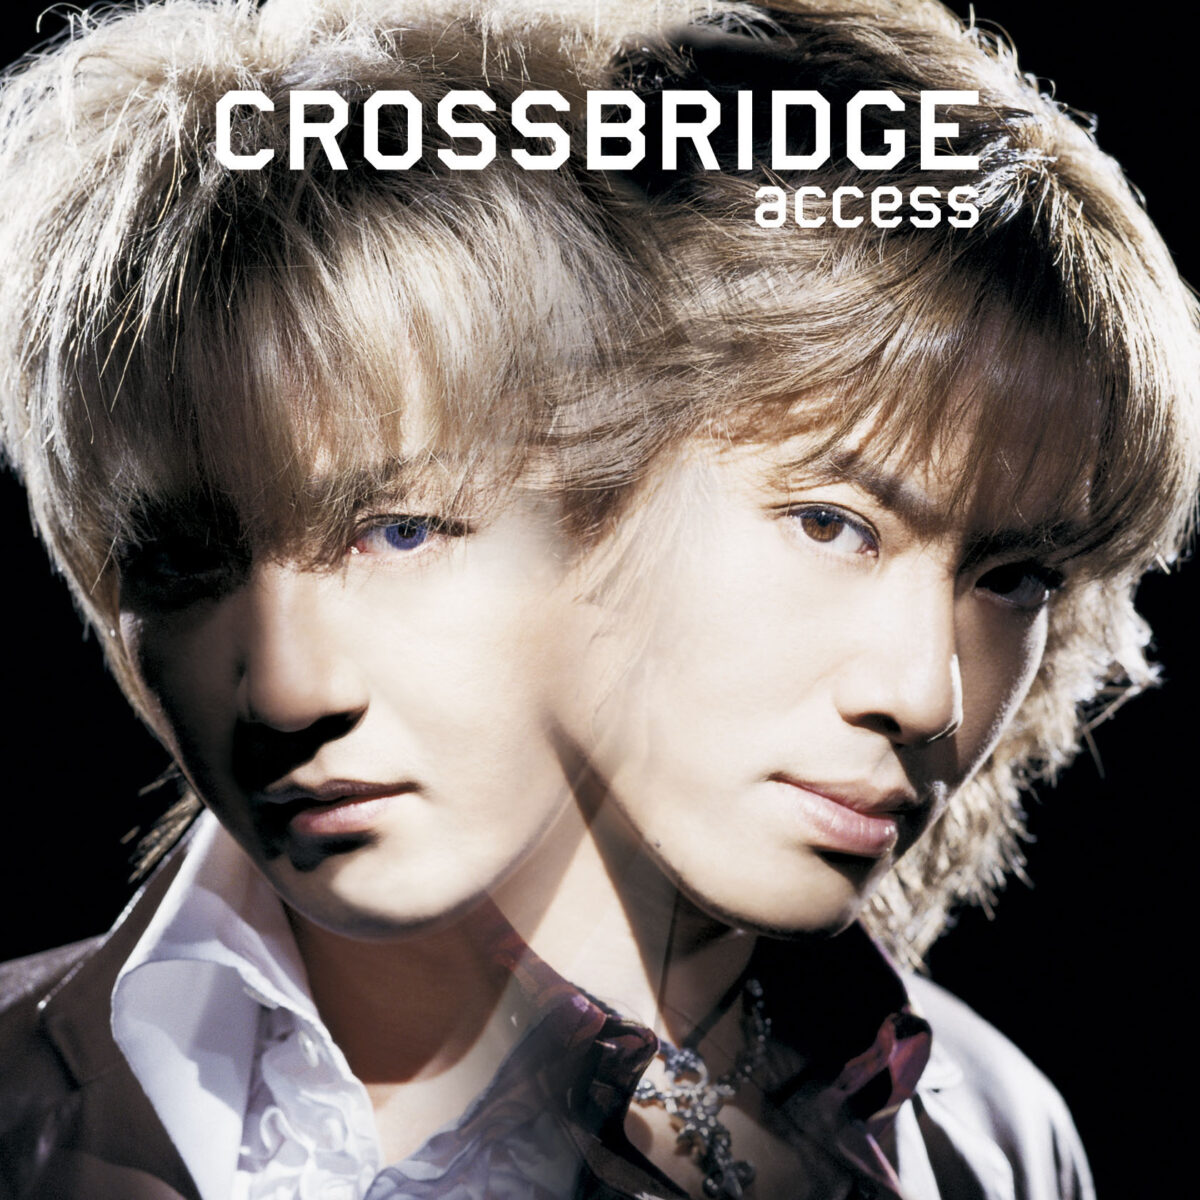 access 2002年発表の4thアルバム『CROSSBRIDGE』と2003年発表の5thアルバム『Rippin’ GHOST』のRemastered Edition 11月8日発売